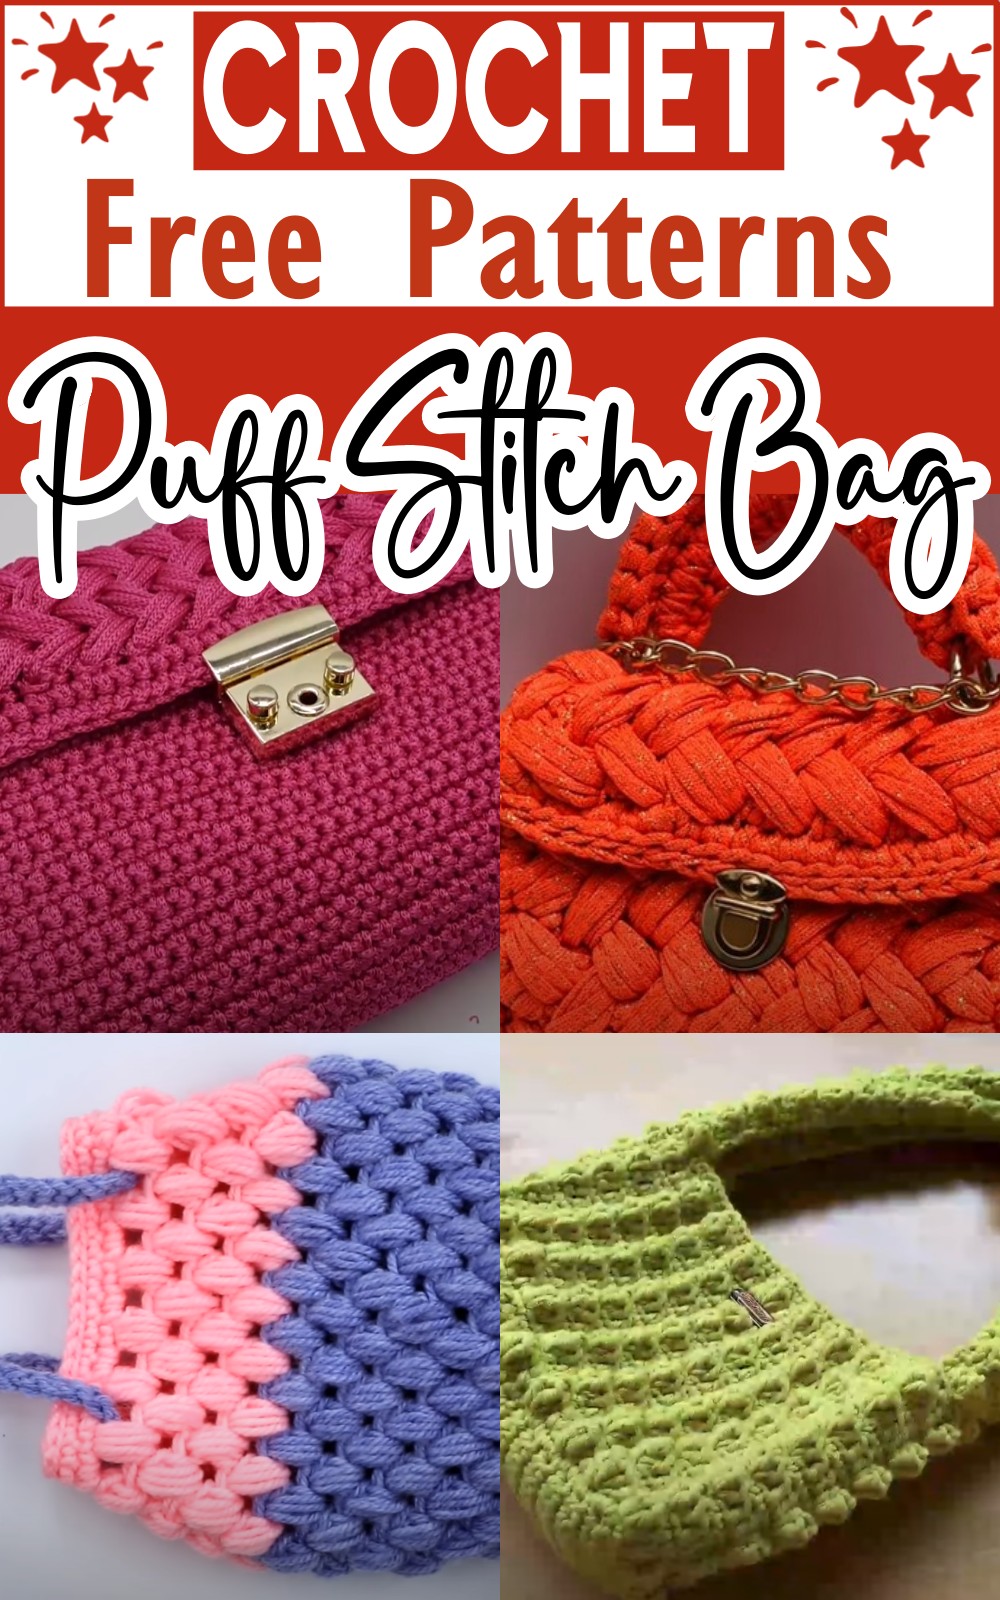 Puff Stitch Crochet Bag Patterns free